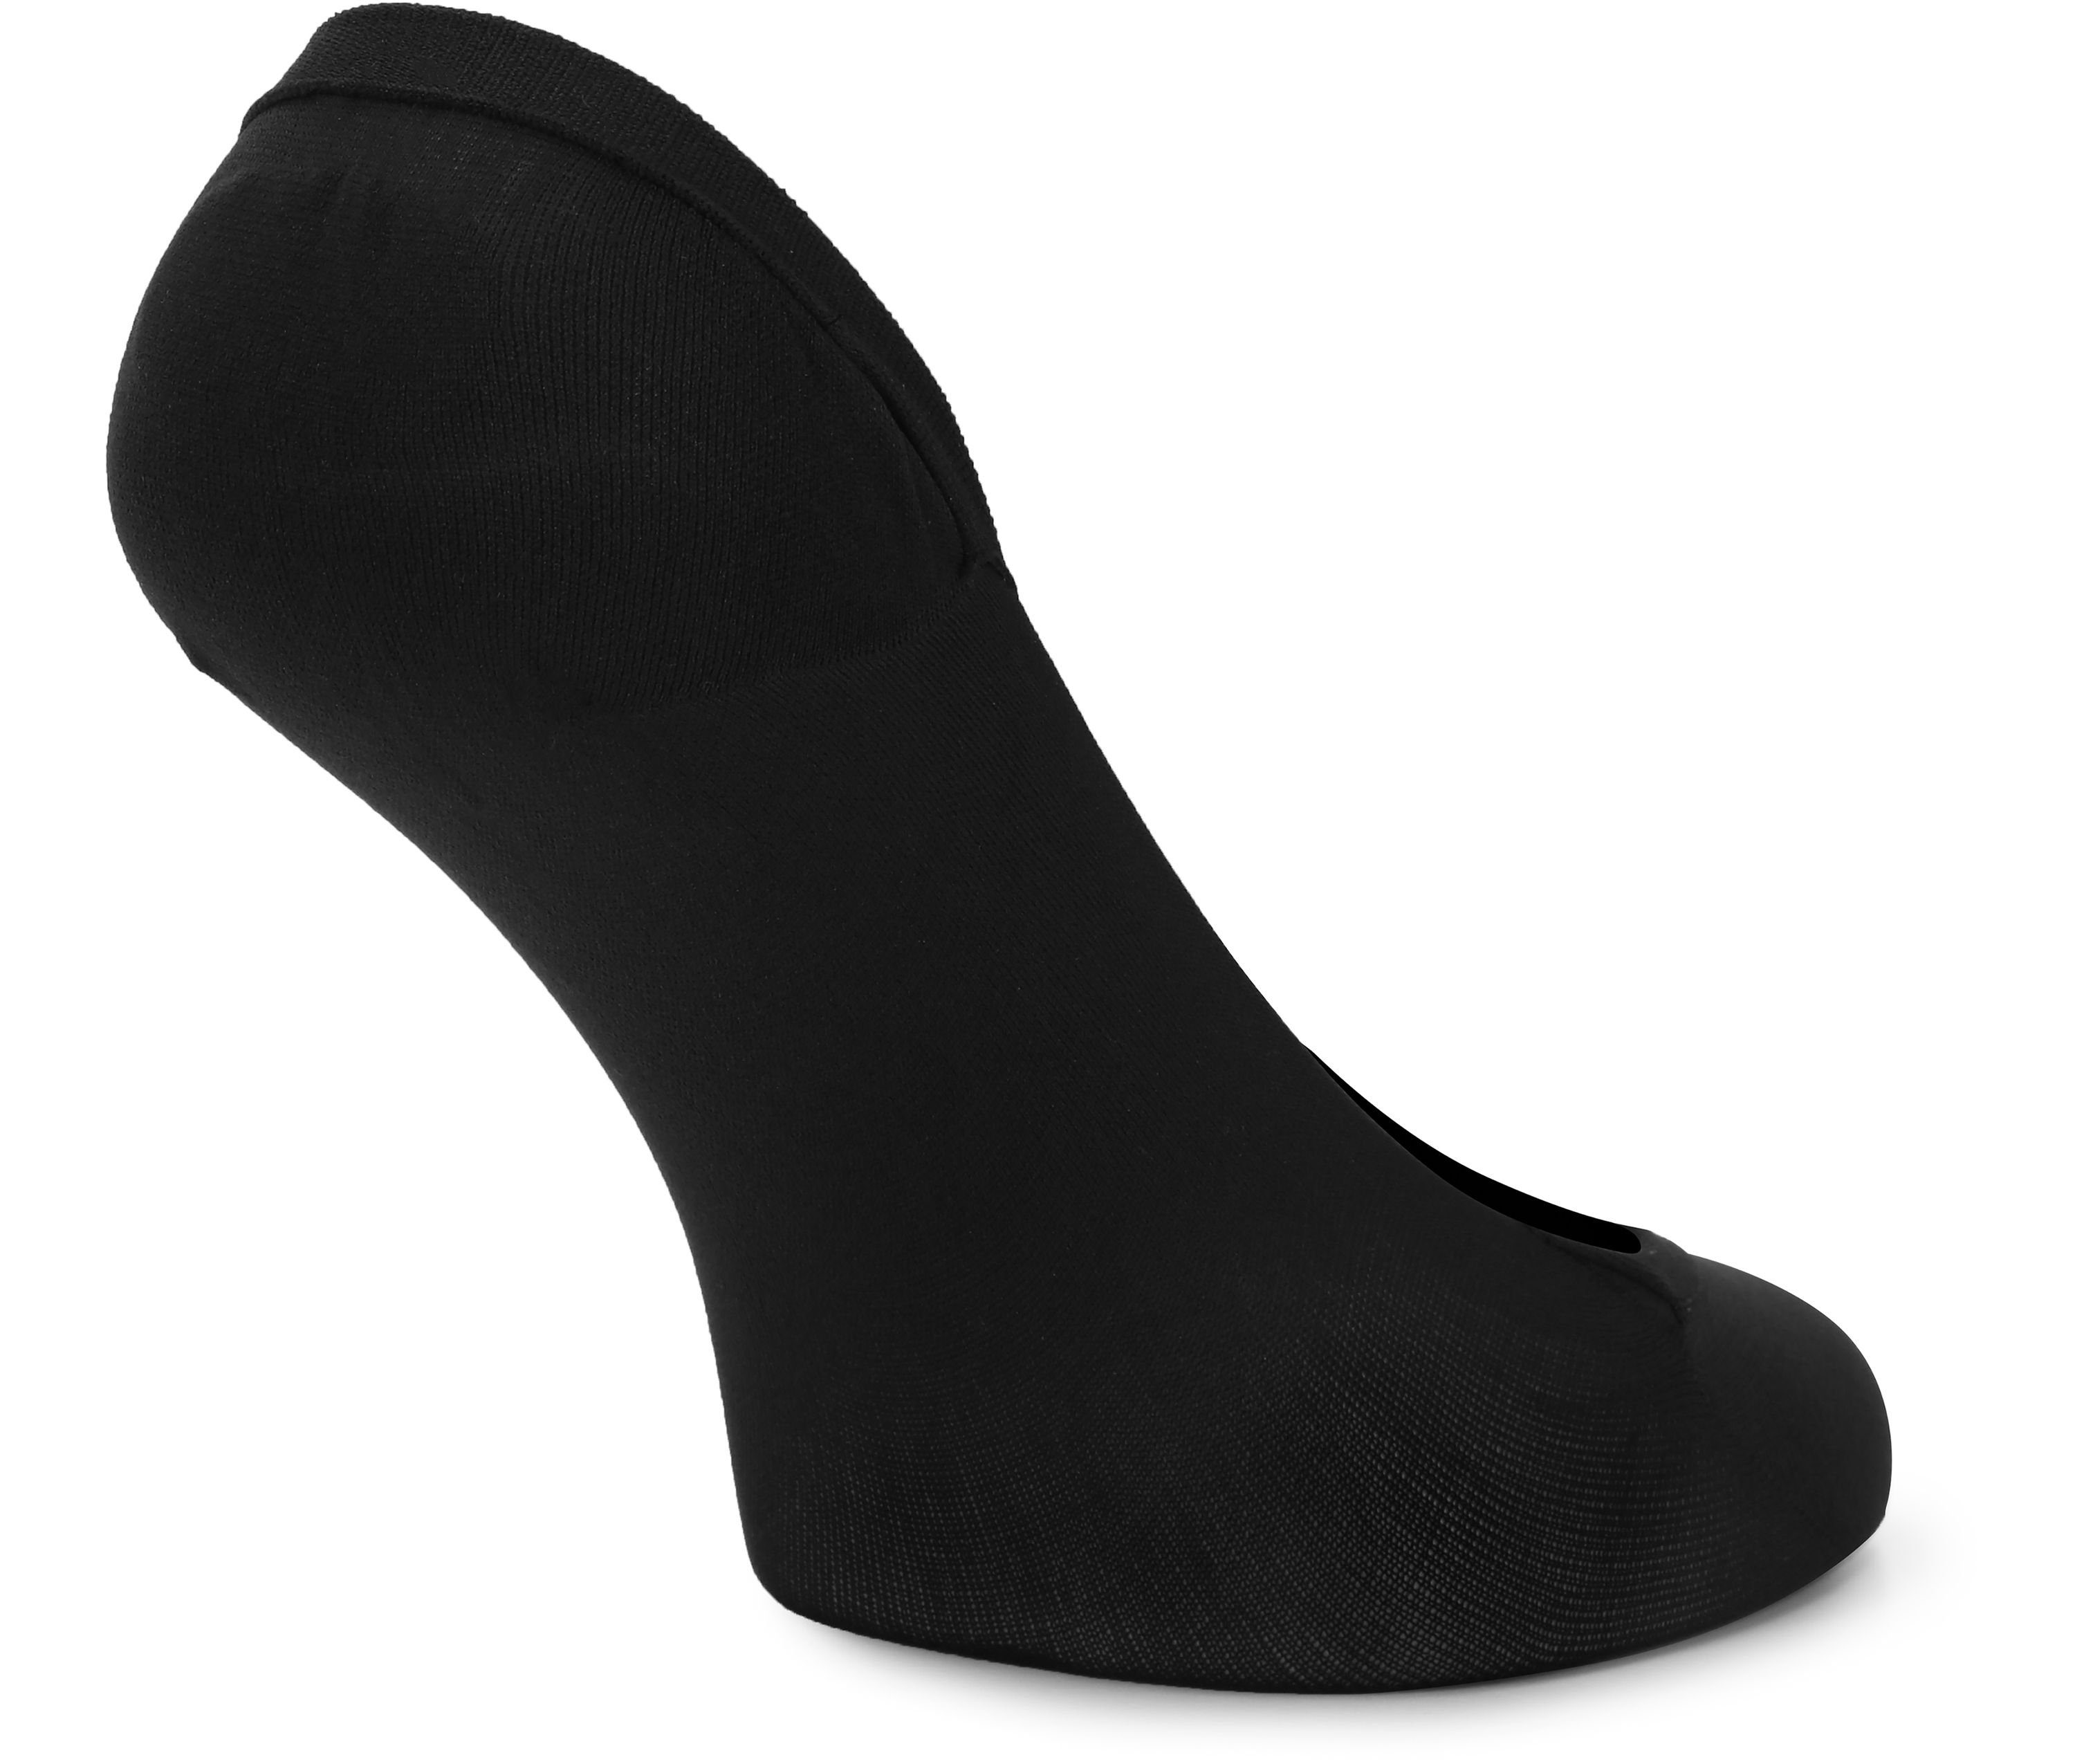 Socken Damen 4Pack - Halbsocken Style Atmungsaktive Füßlinge Sneaker MSGI046 Socken Schwarz/Beige Merry